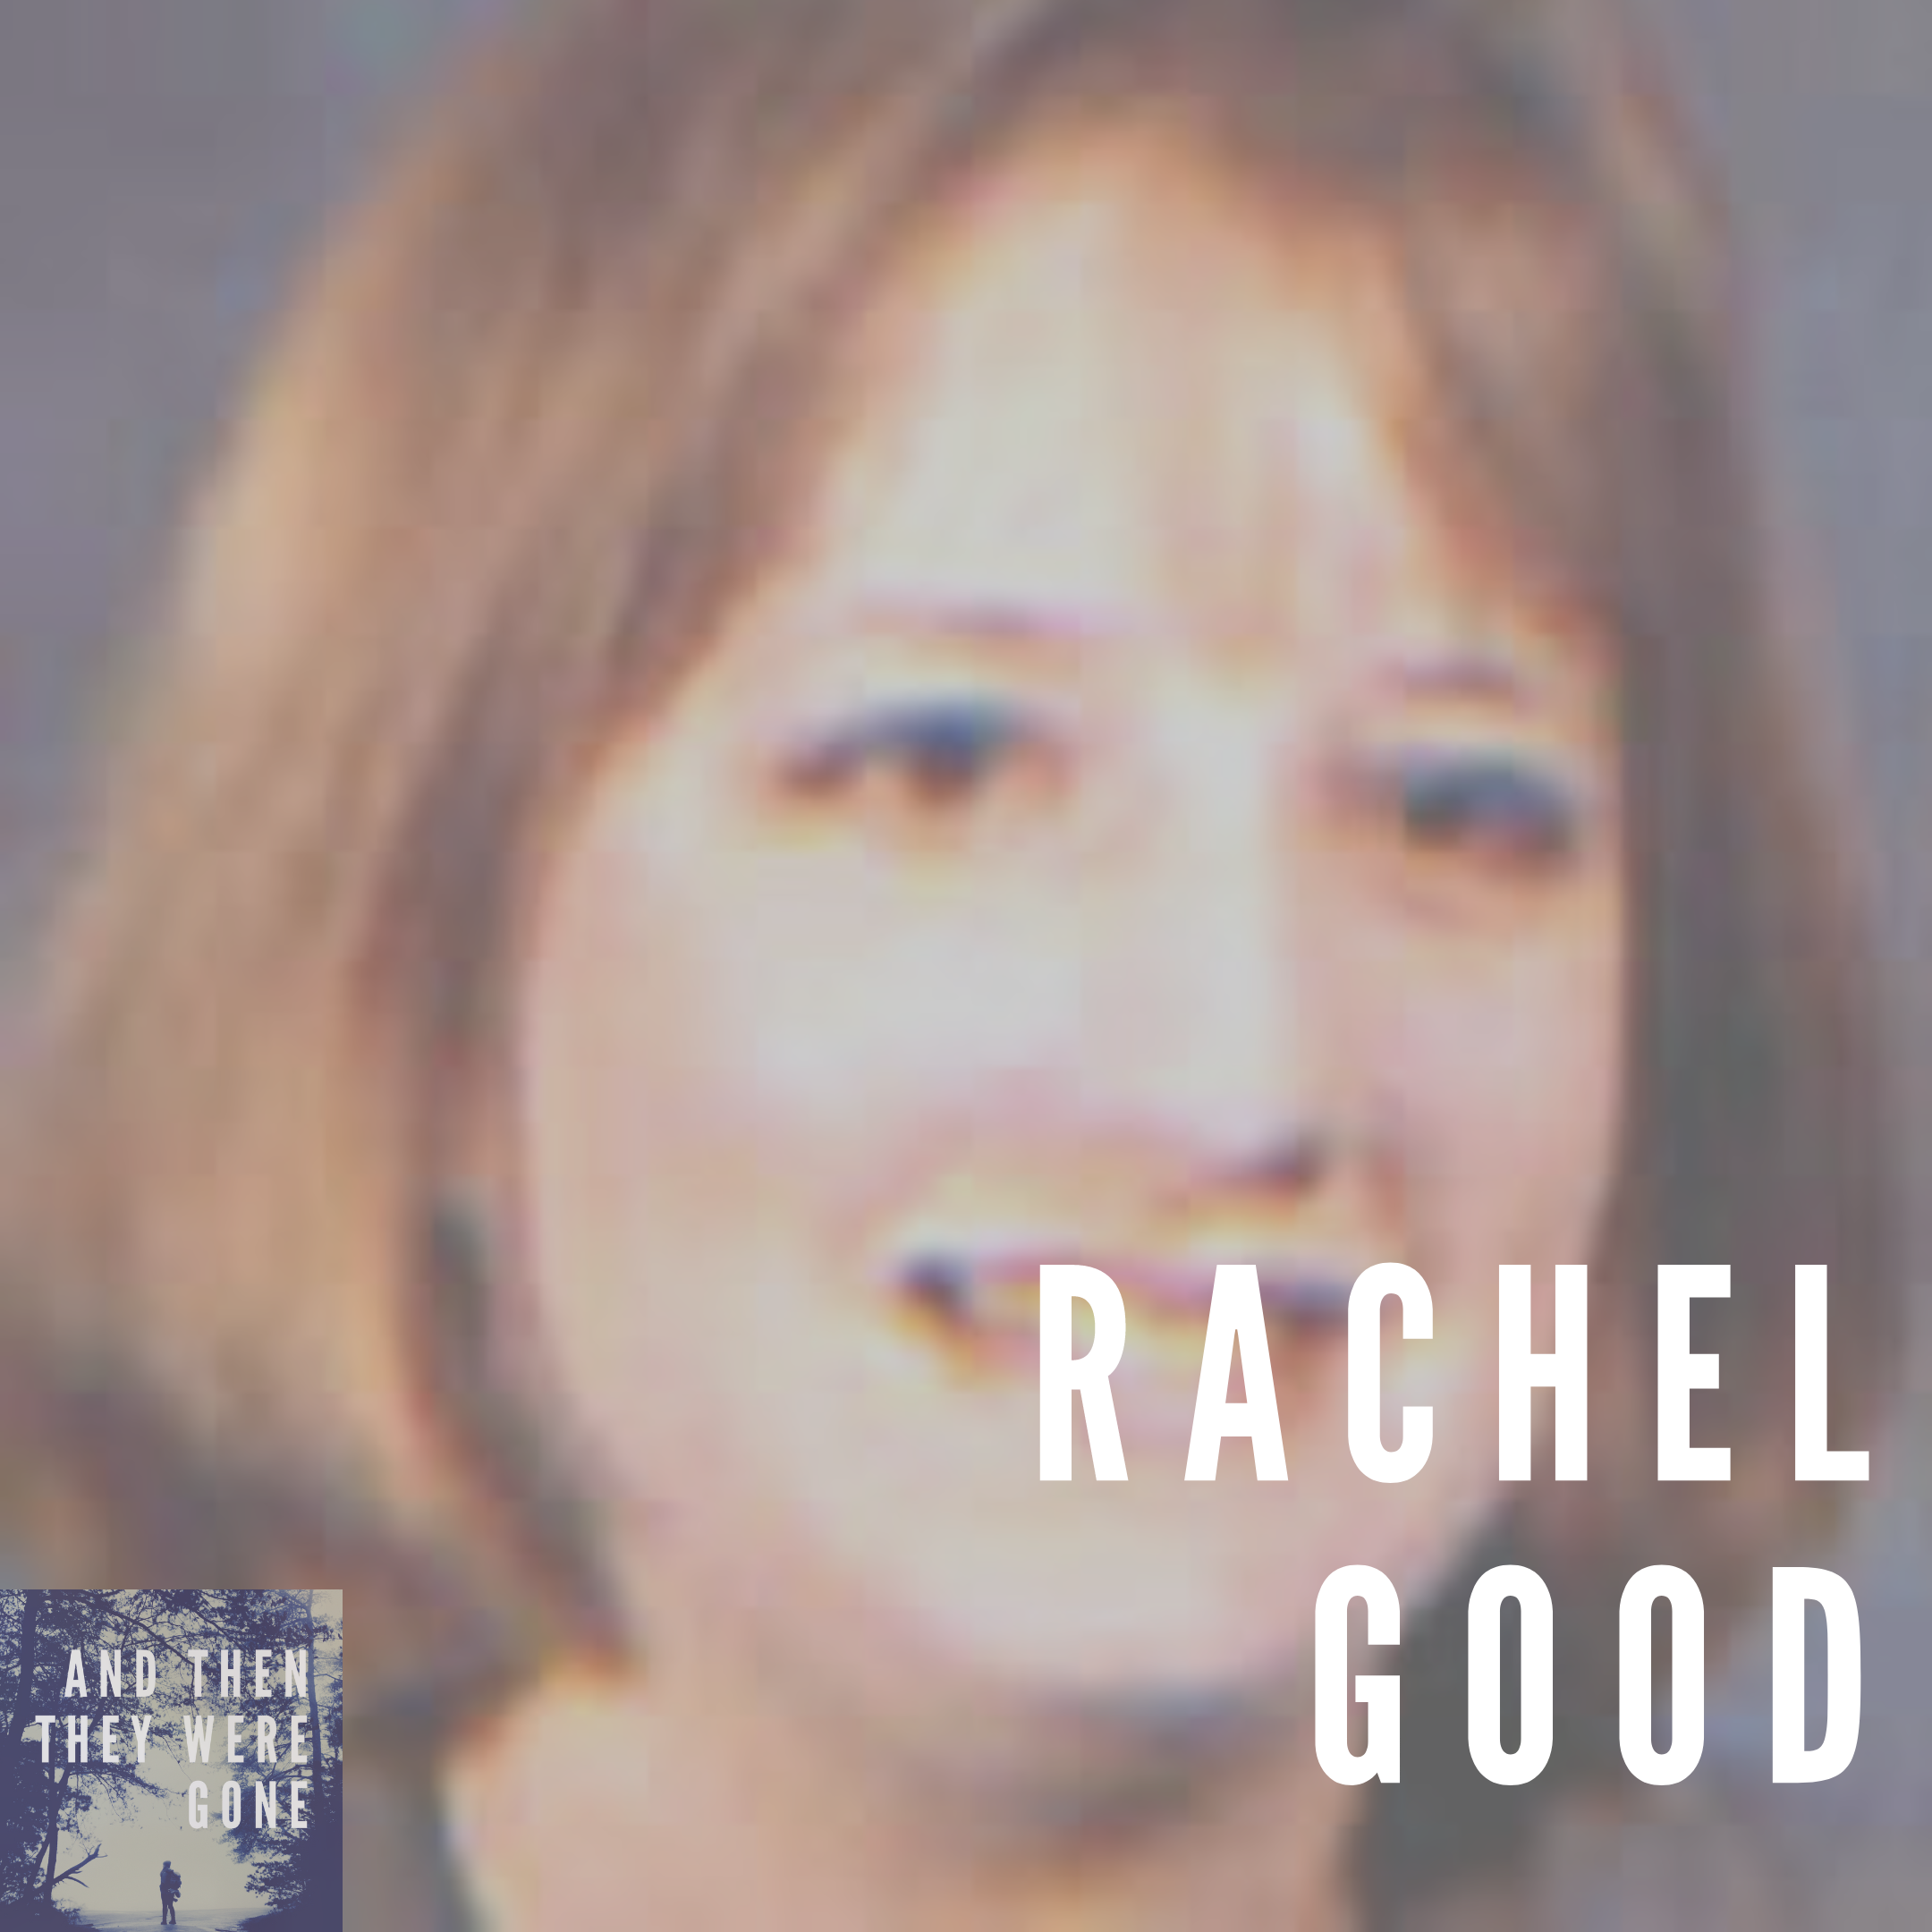 Rachel Good has been missing from Elkton, VA since October 18, 2003